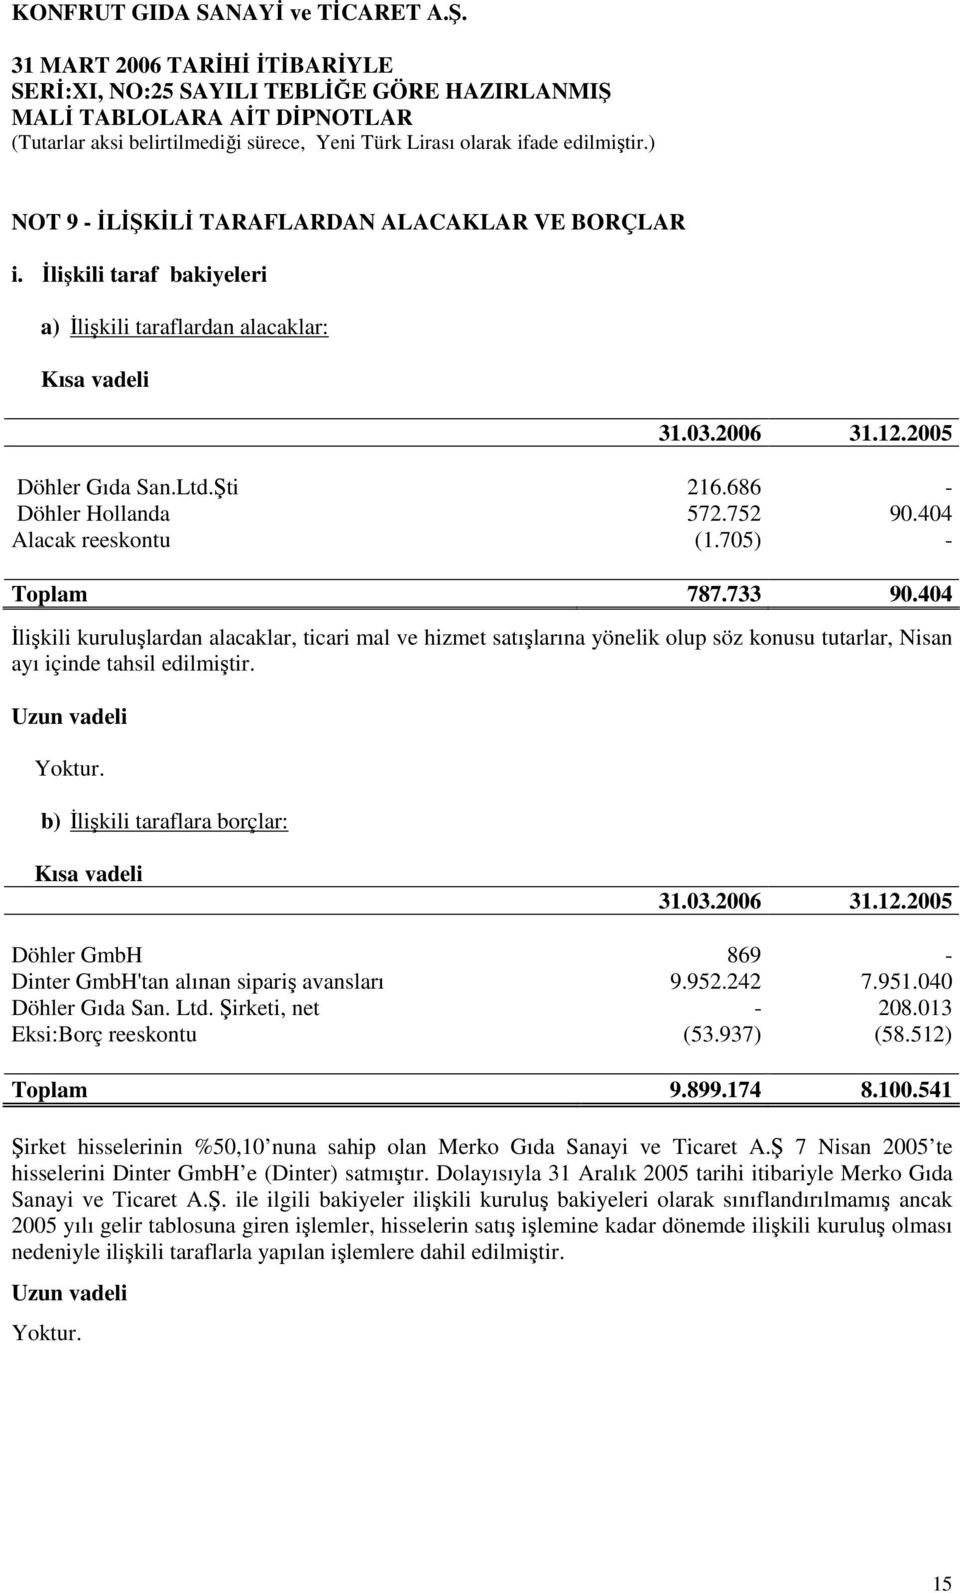 Uzun vadeli b) Đlişkili taraflara borçlar: Kısa vadeli Döhler GmbH 869 - Dinter GmbH'tan alınan sipariş avansları 9.952.242 7.951.040 Döhler Gıda San. Ltd. Şirketi, net - 208.